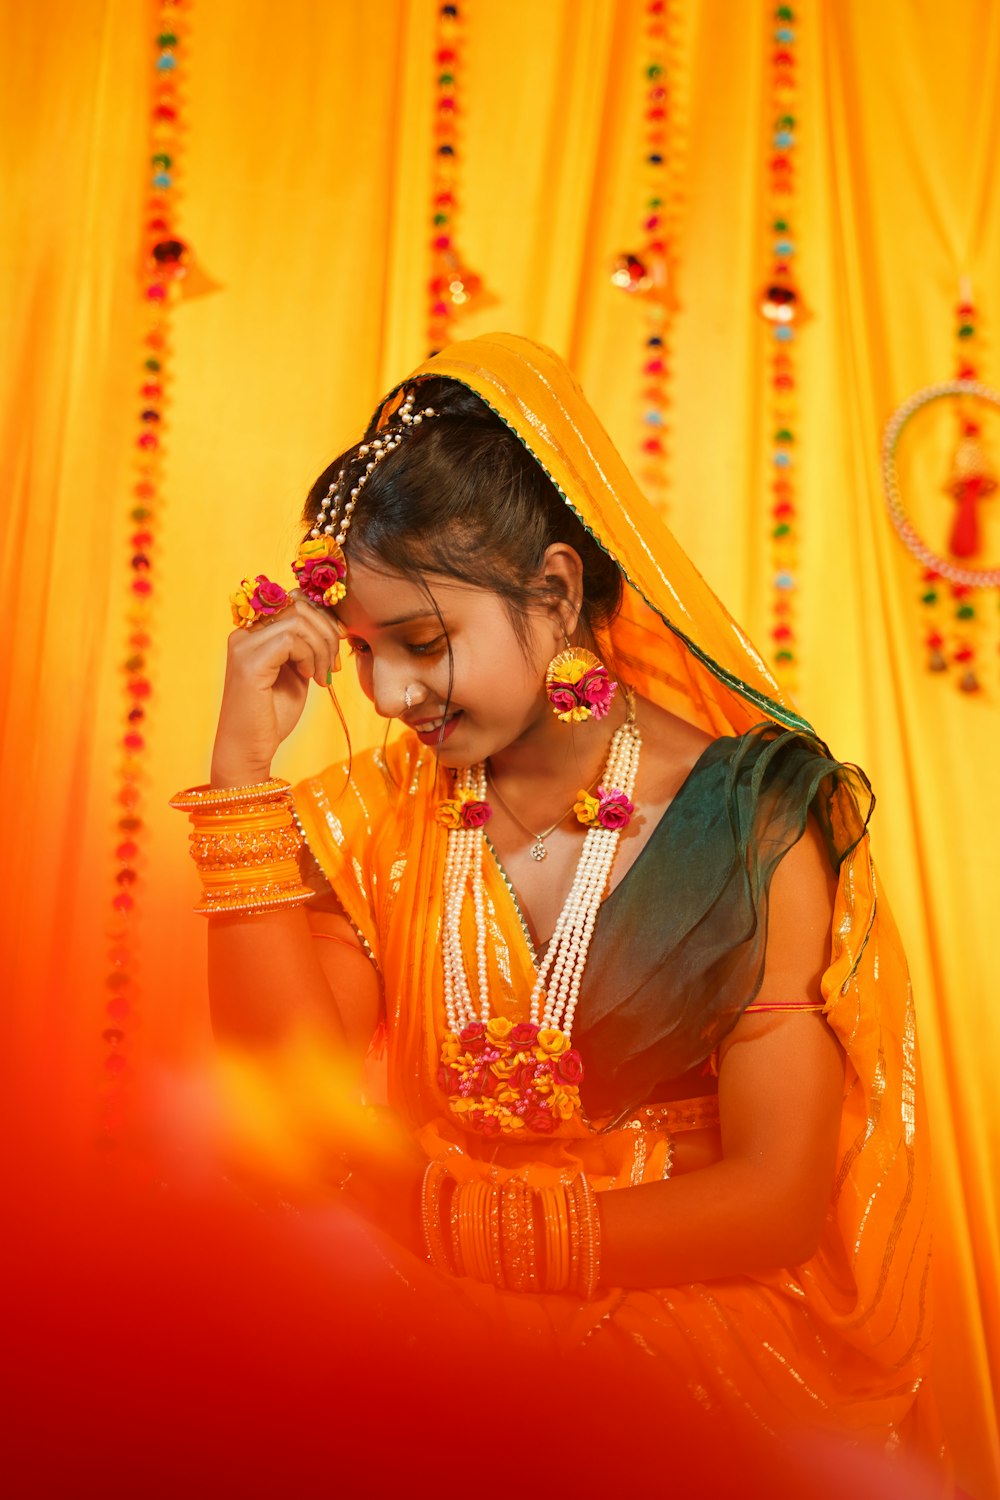 Une jeune fille vêtue d’un costume traditionnel indien